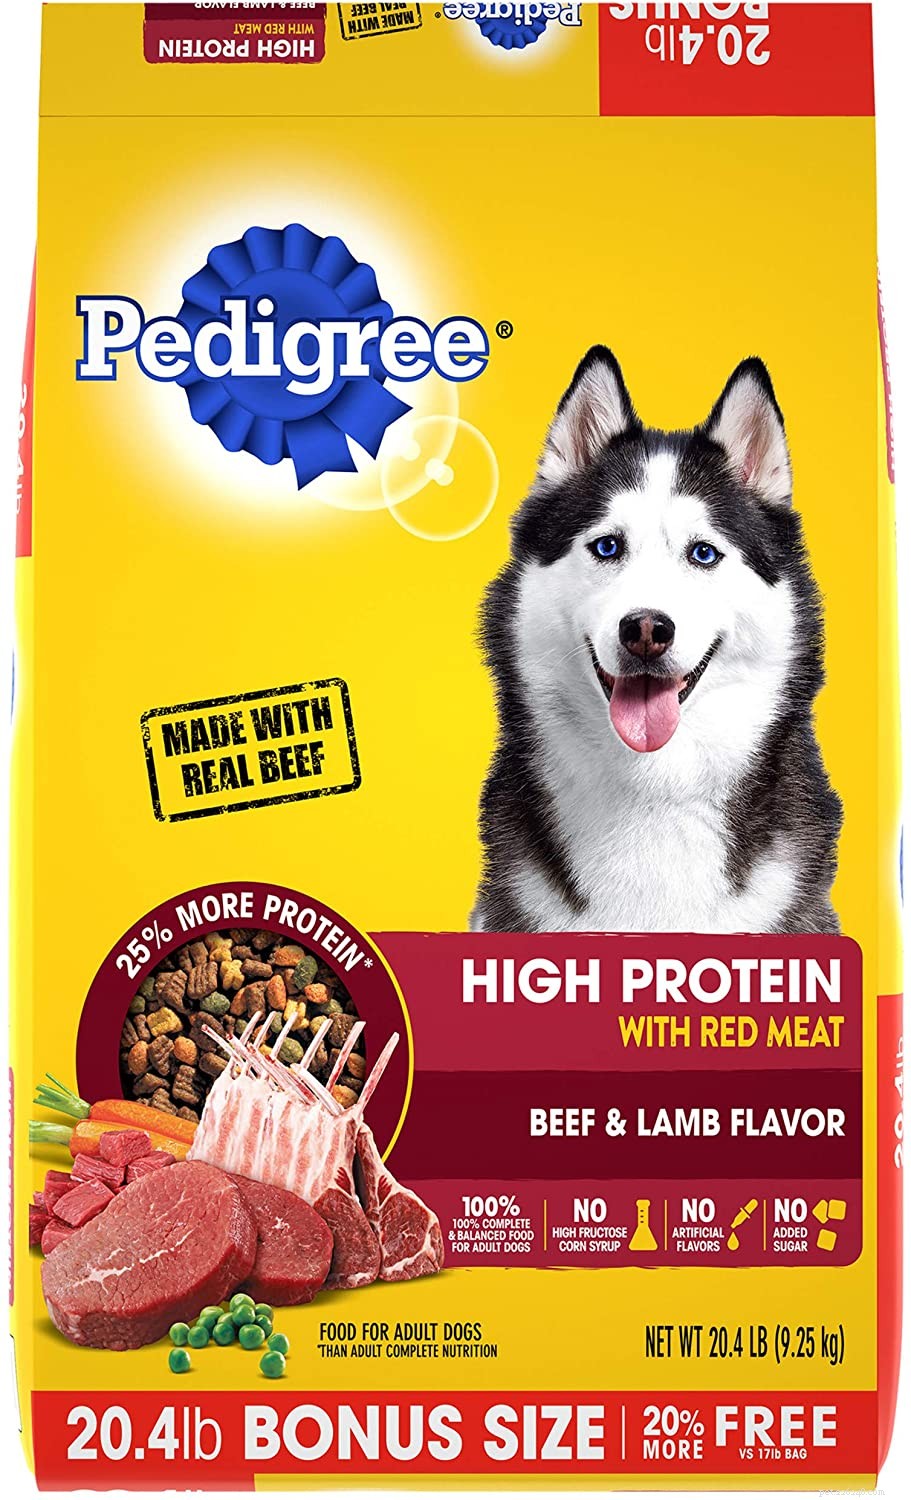 Nejlepší protein pro psy:Výběr nejlepšího krmiva a zdraví pro psy